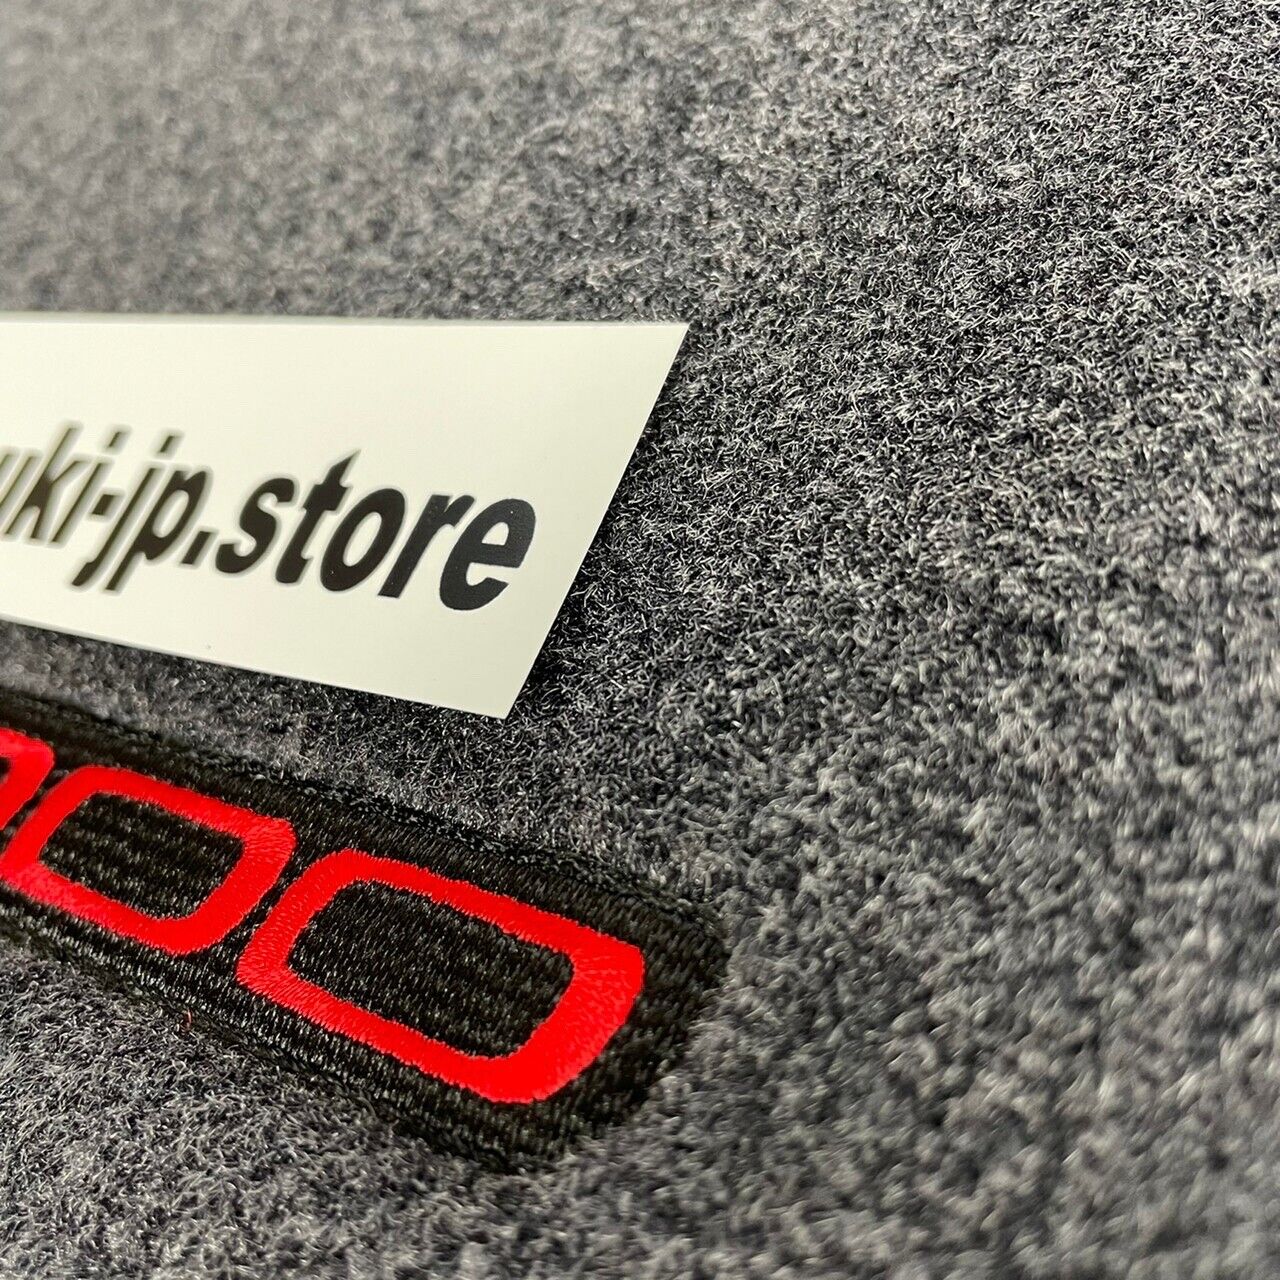 Honda Genuine S2000 Black with Red Stiching Carpeted Set Floor Mat RHD OEM Japan